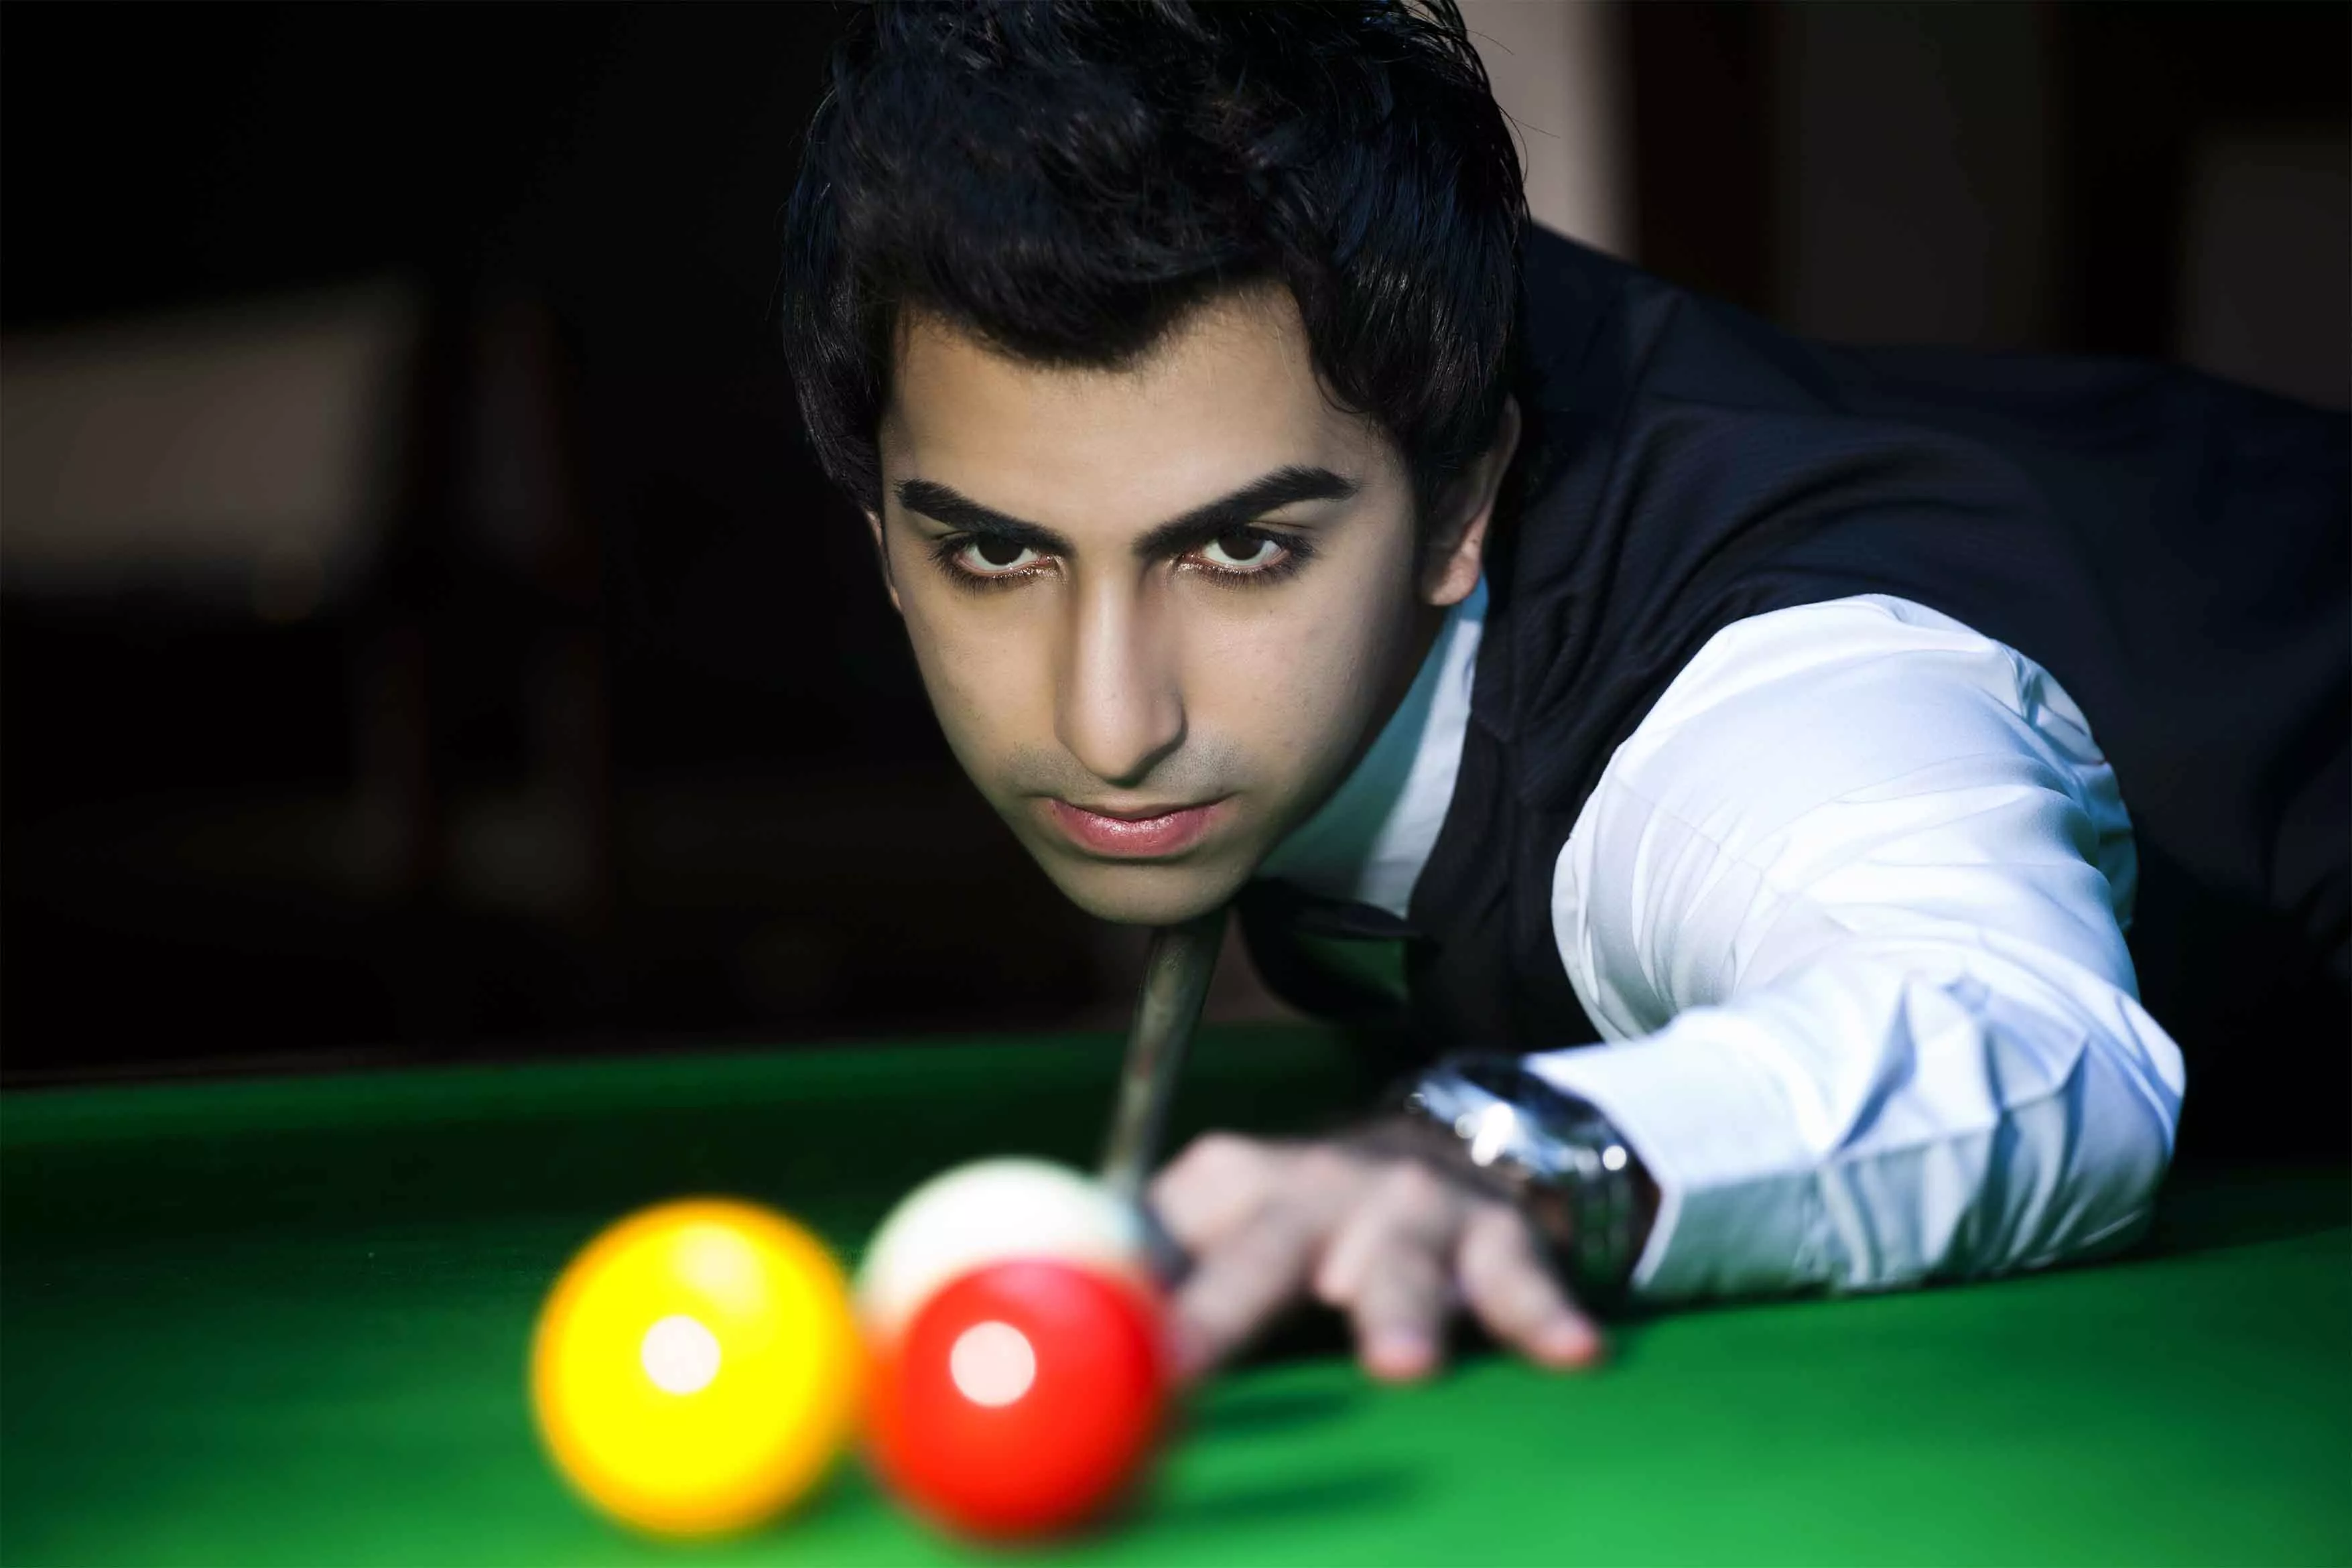 Potluck Pool & Billiards in Sri Lanka, Central Asia | Billiards - Rated 0.7